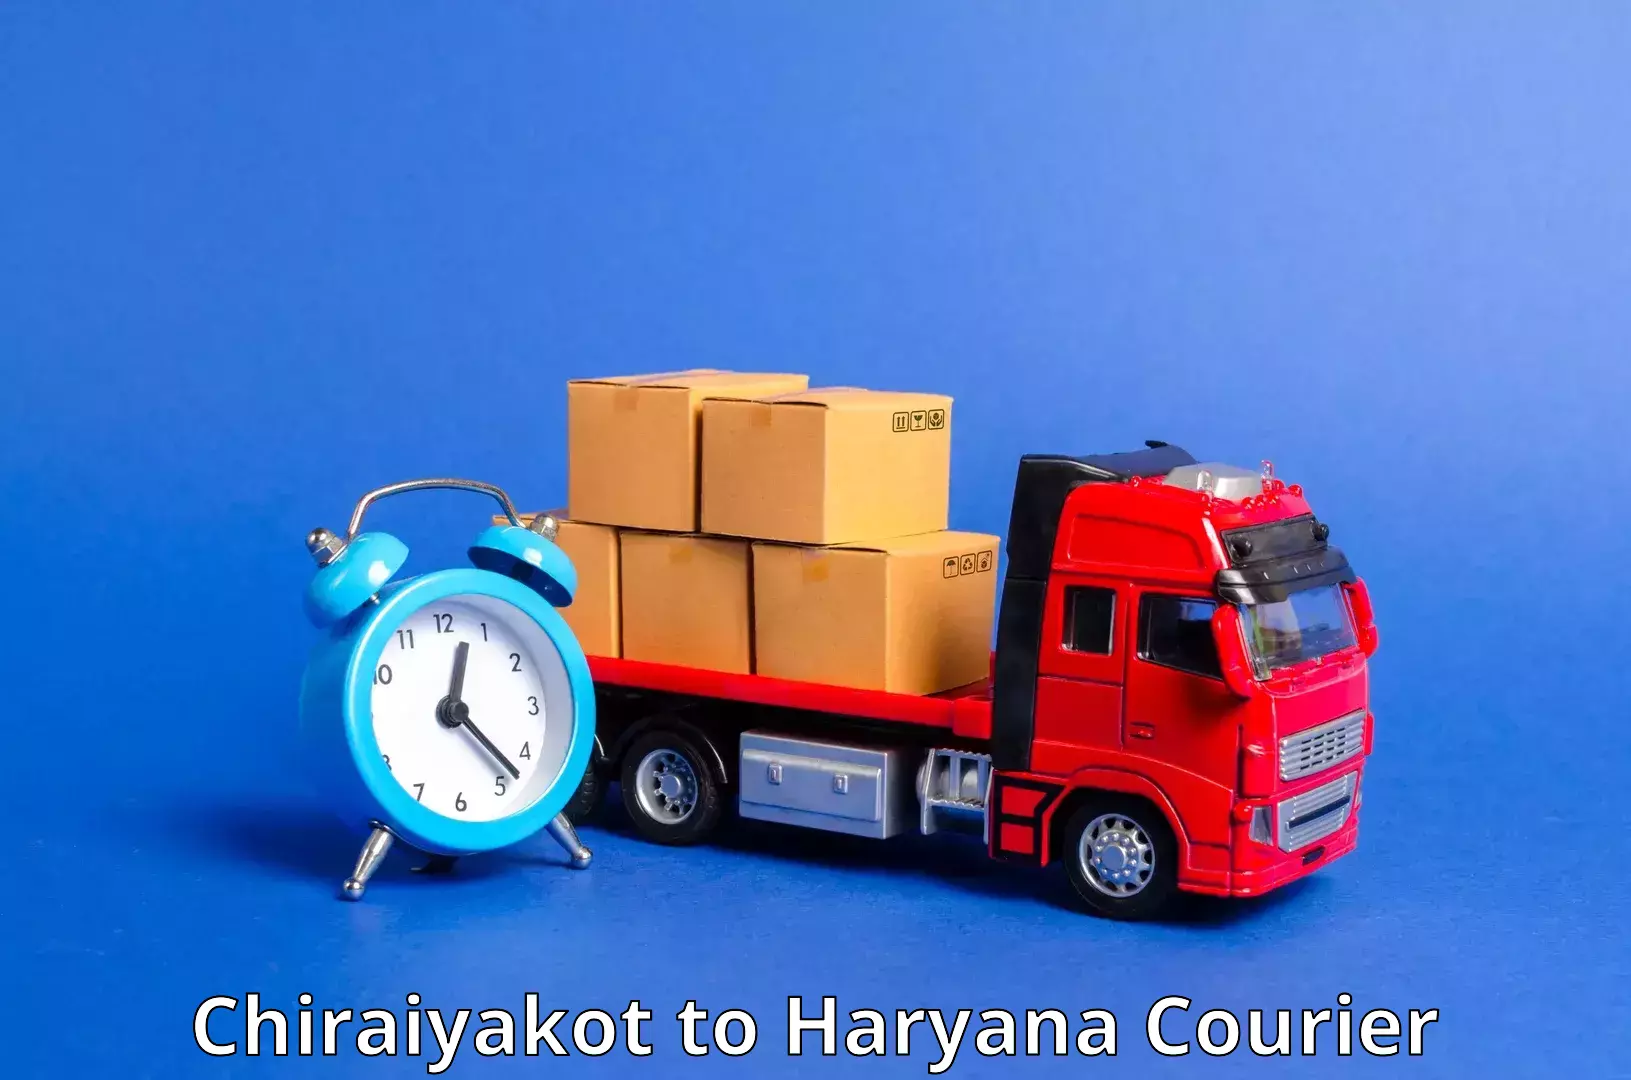 Full-service courier options Chiraiyakot to Gurugram